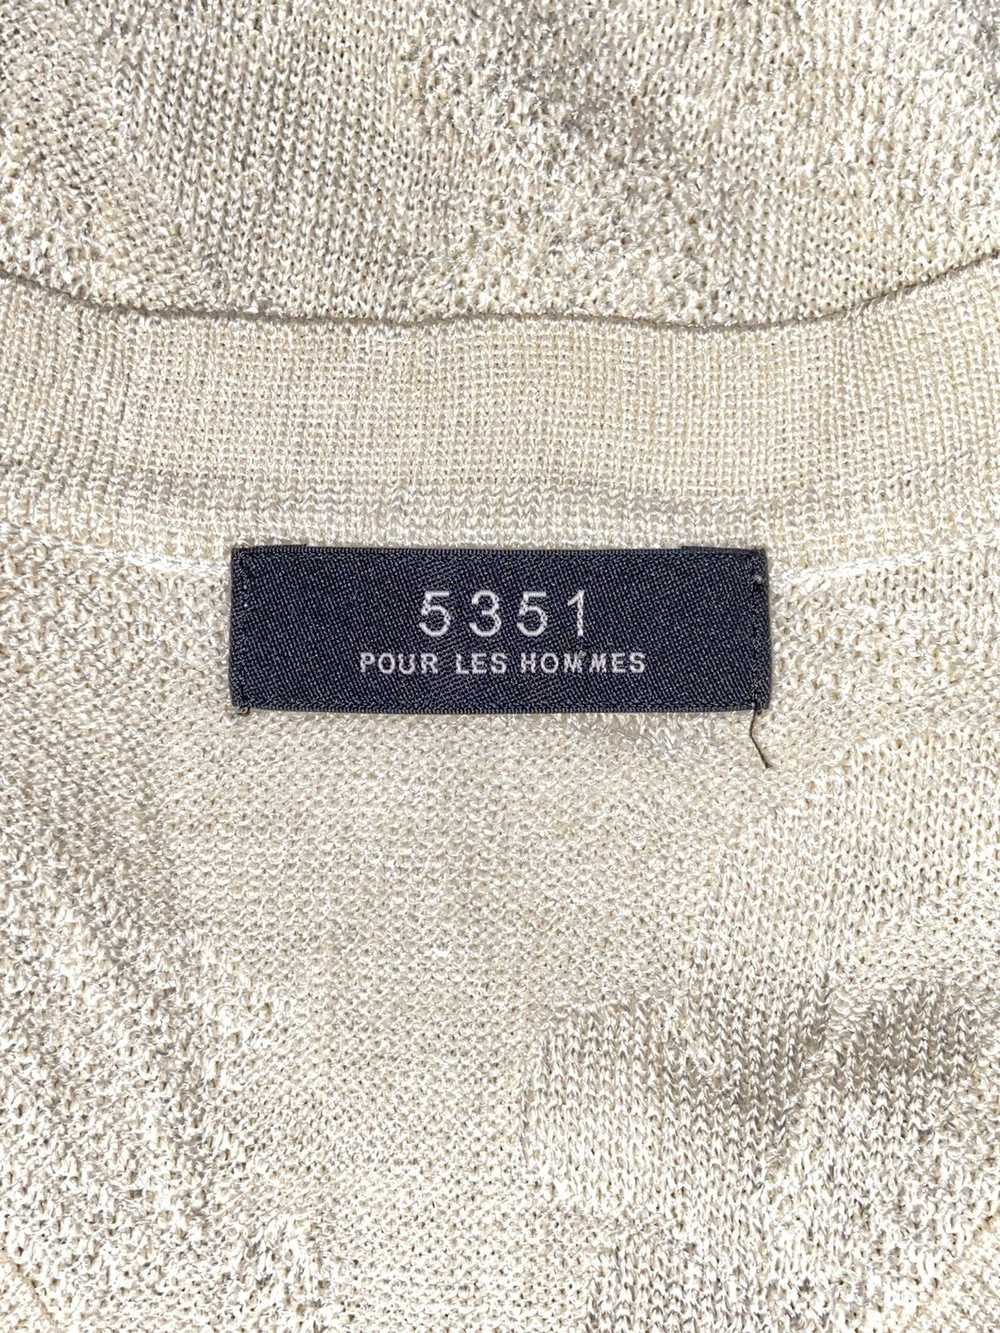 5351 Pour Les Hommes 5351 POUR LES HOMMES Knitwear - image 12